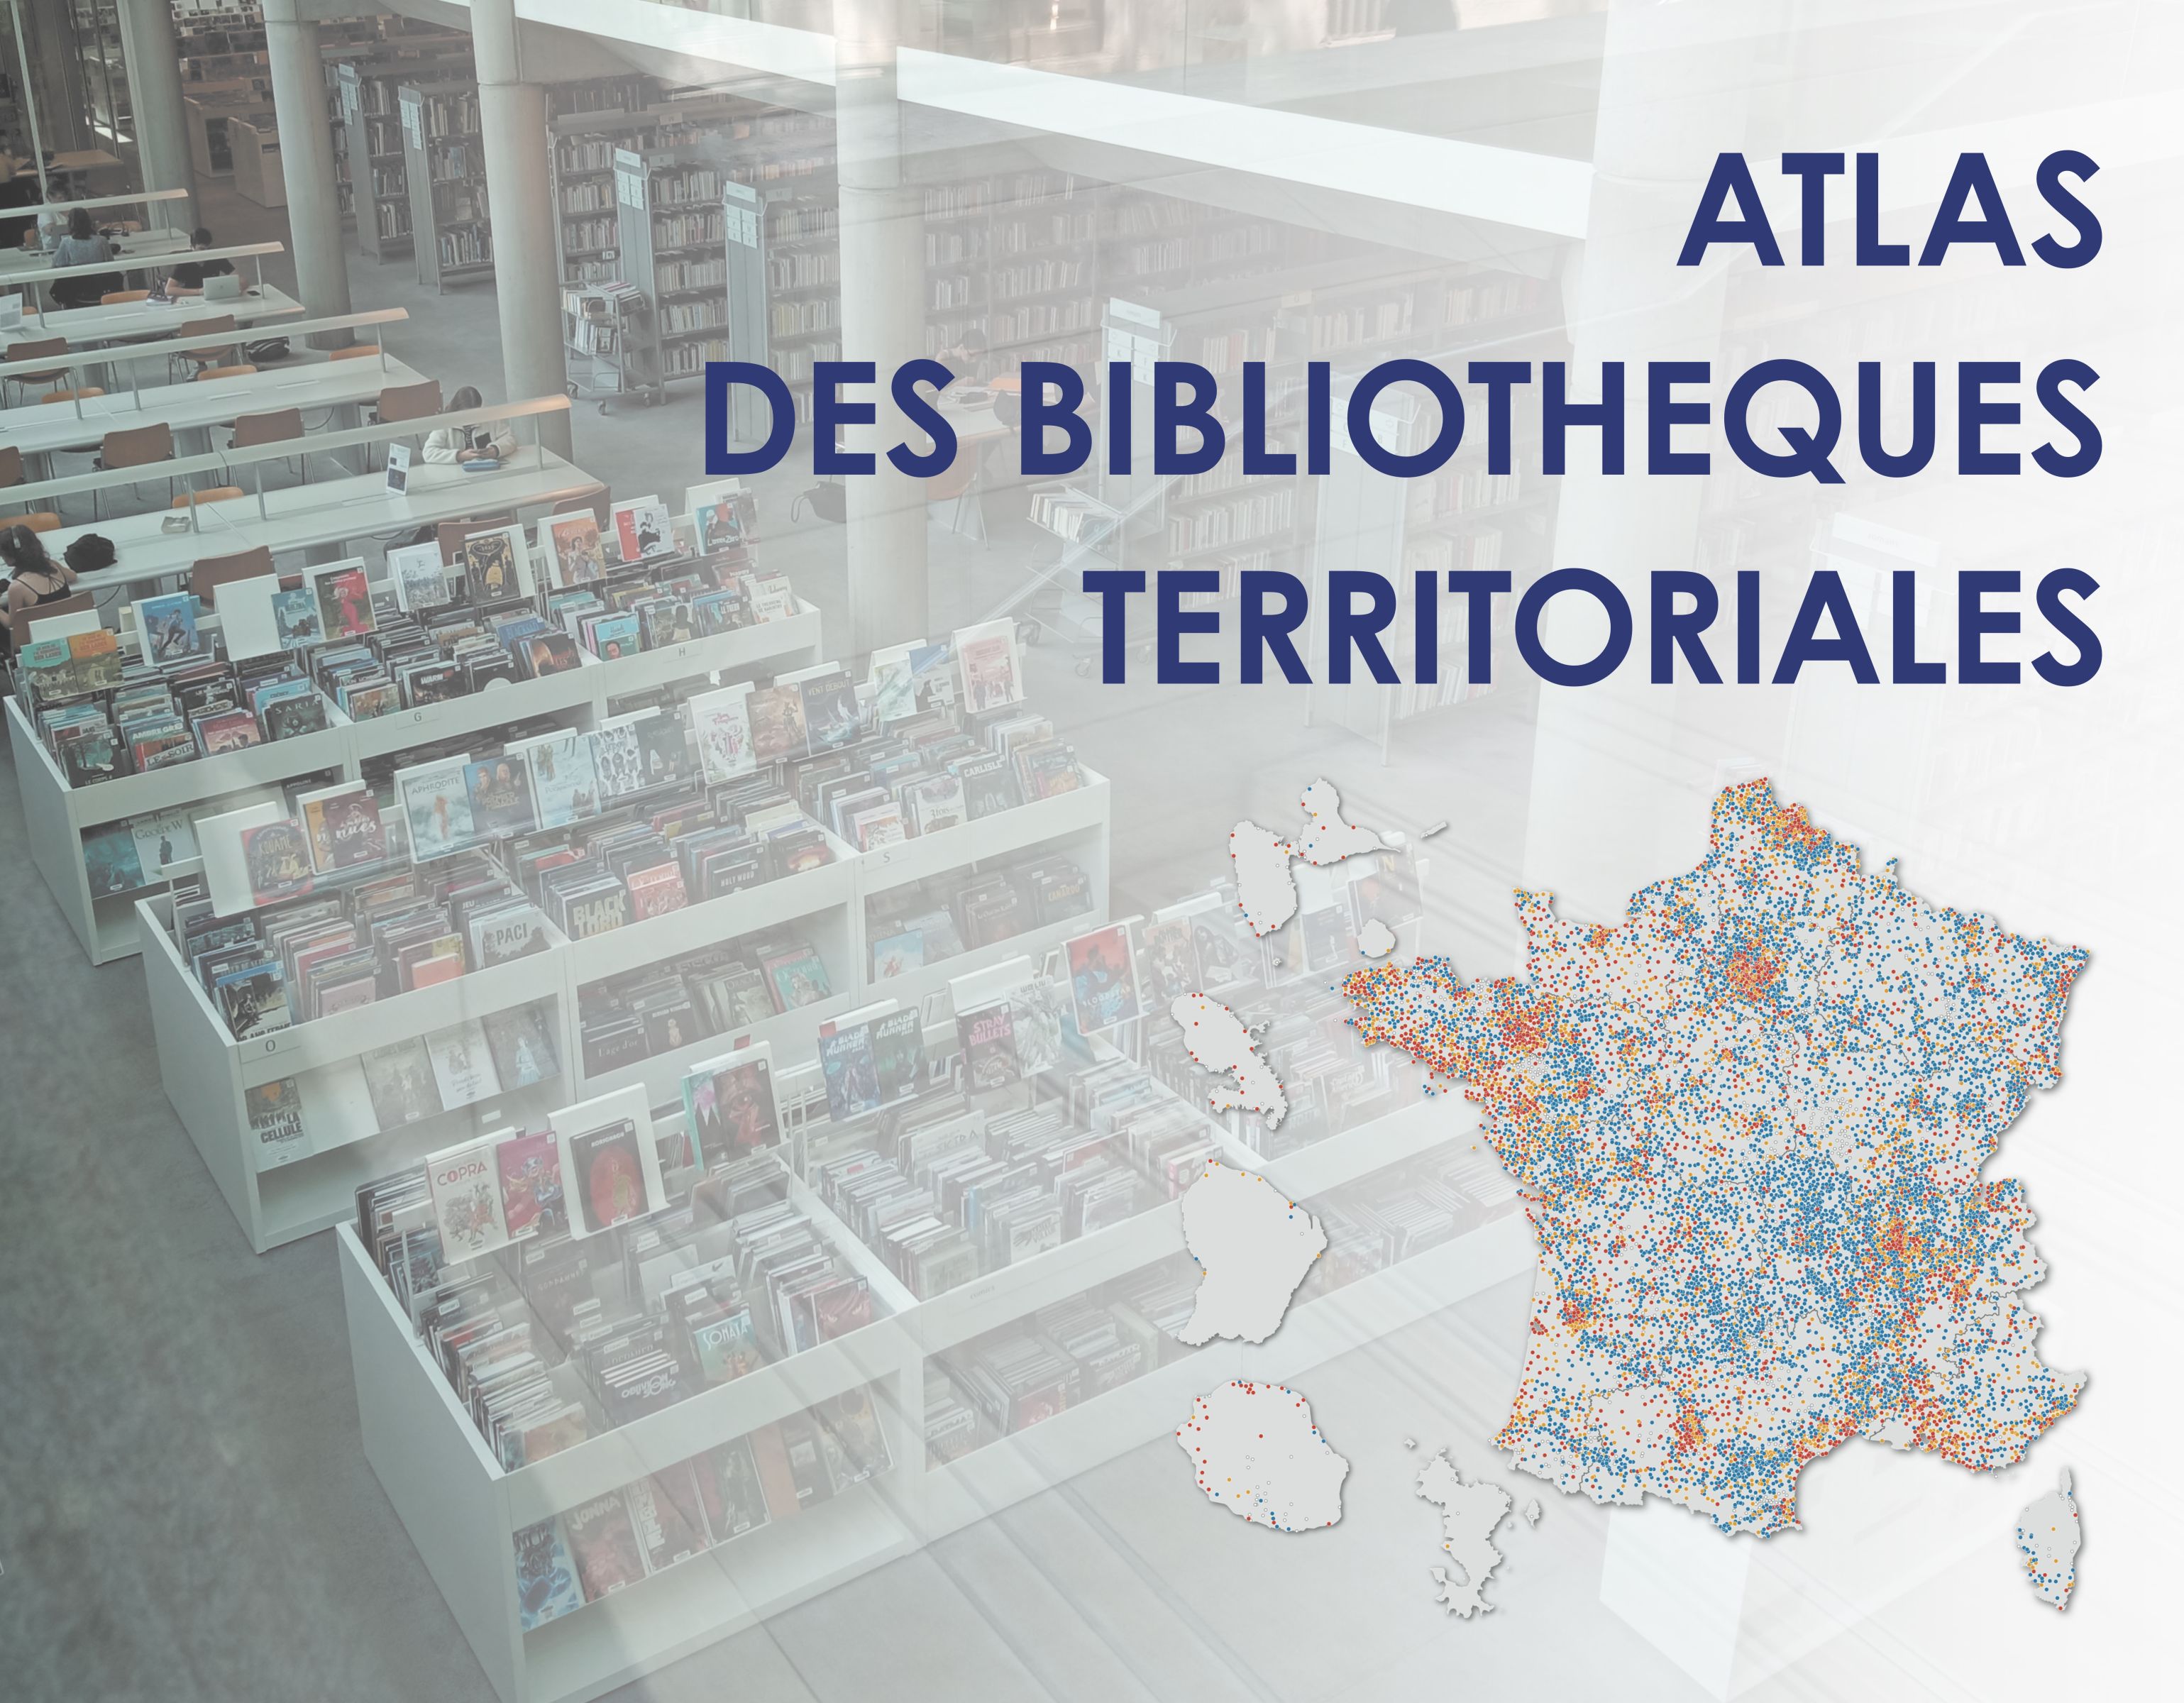 Atlas des bibliothèques territoriales